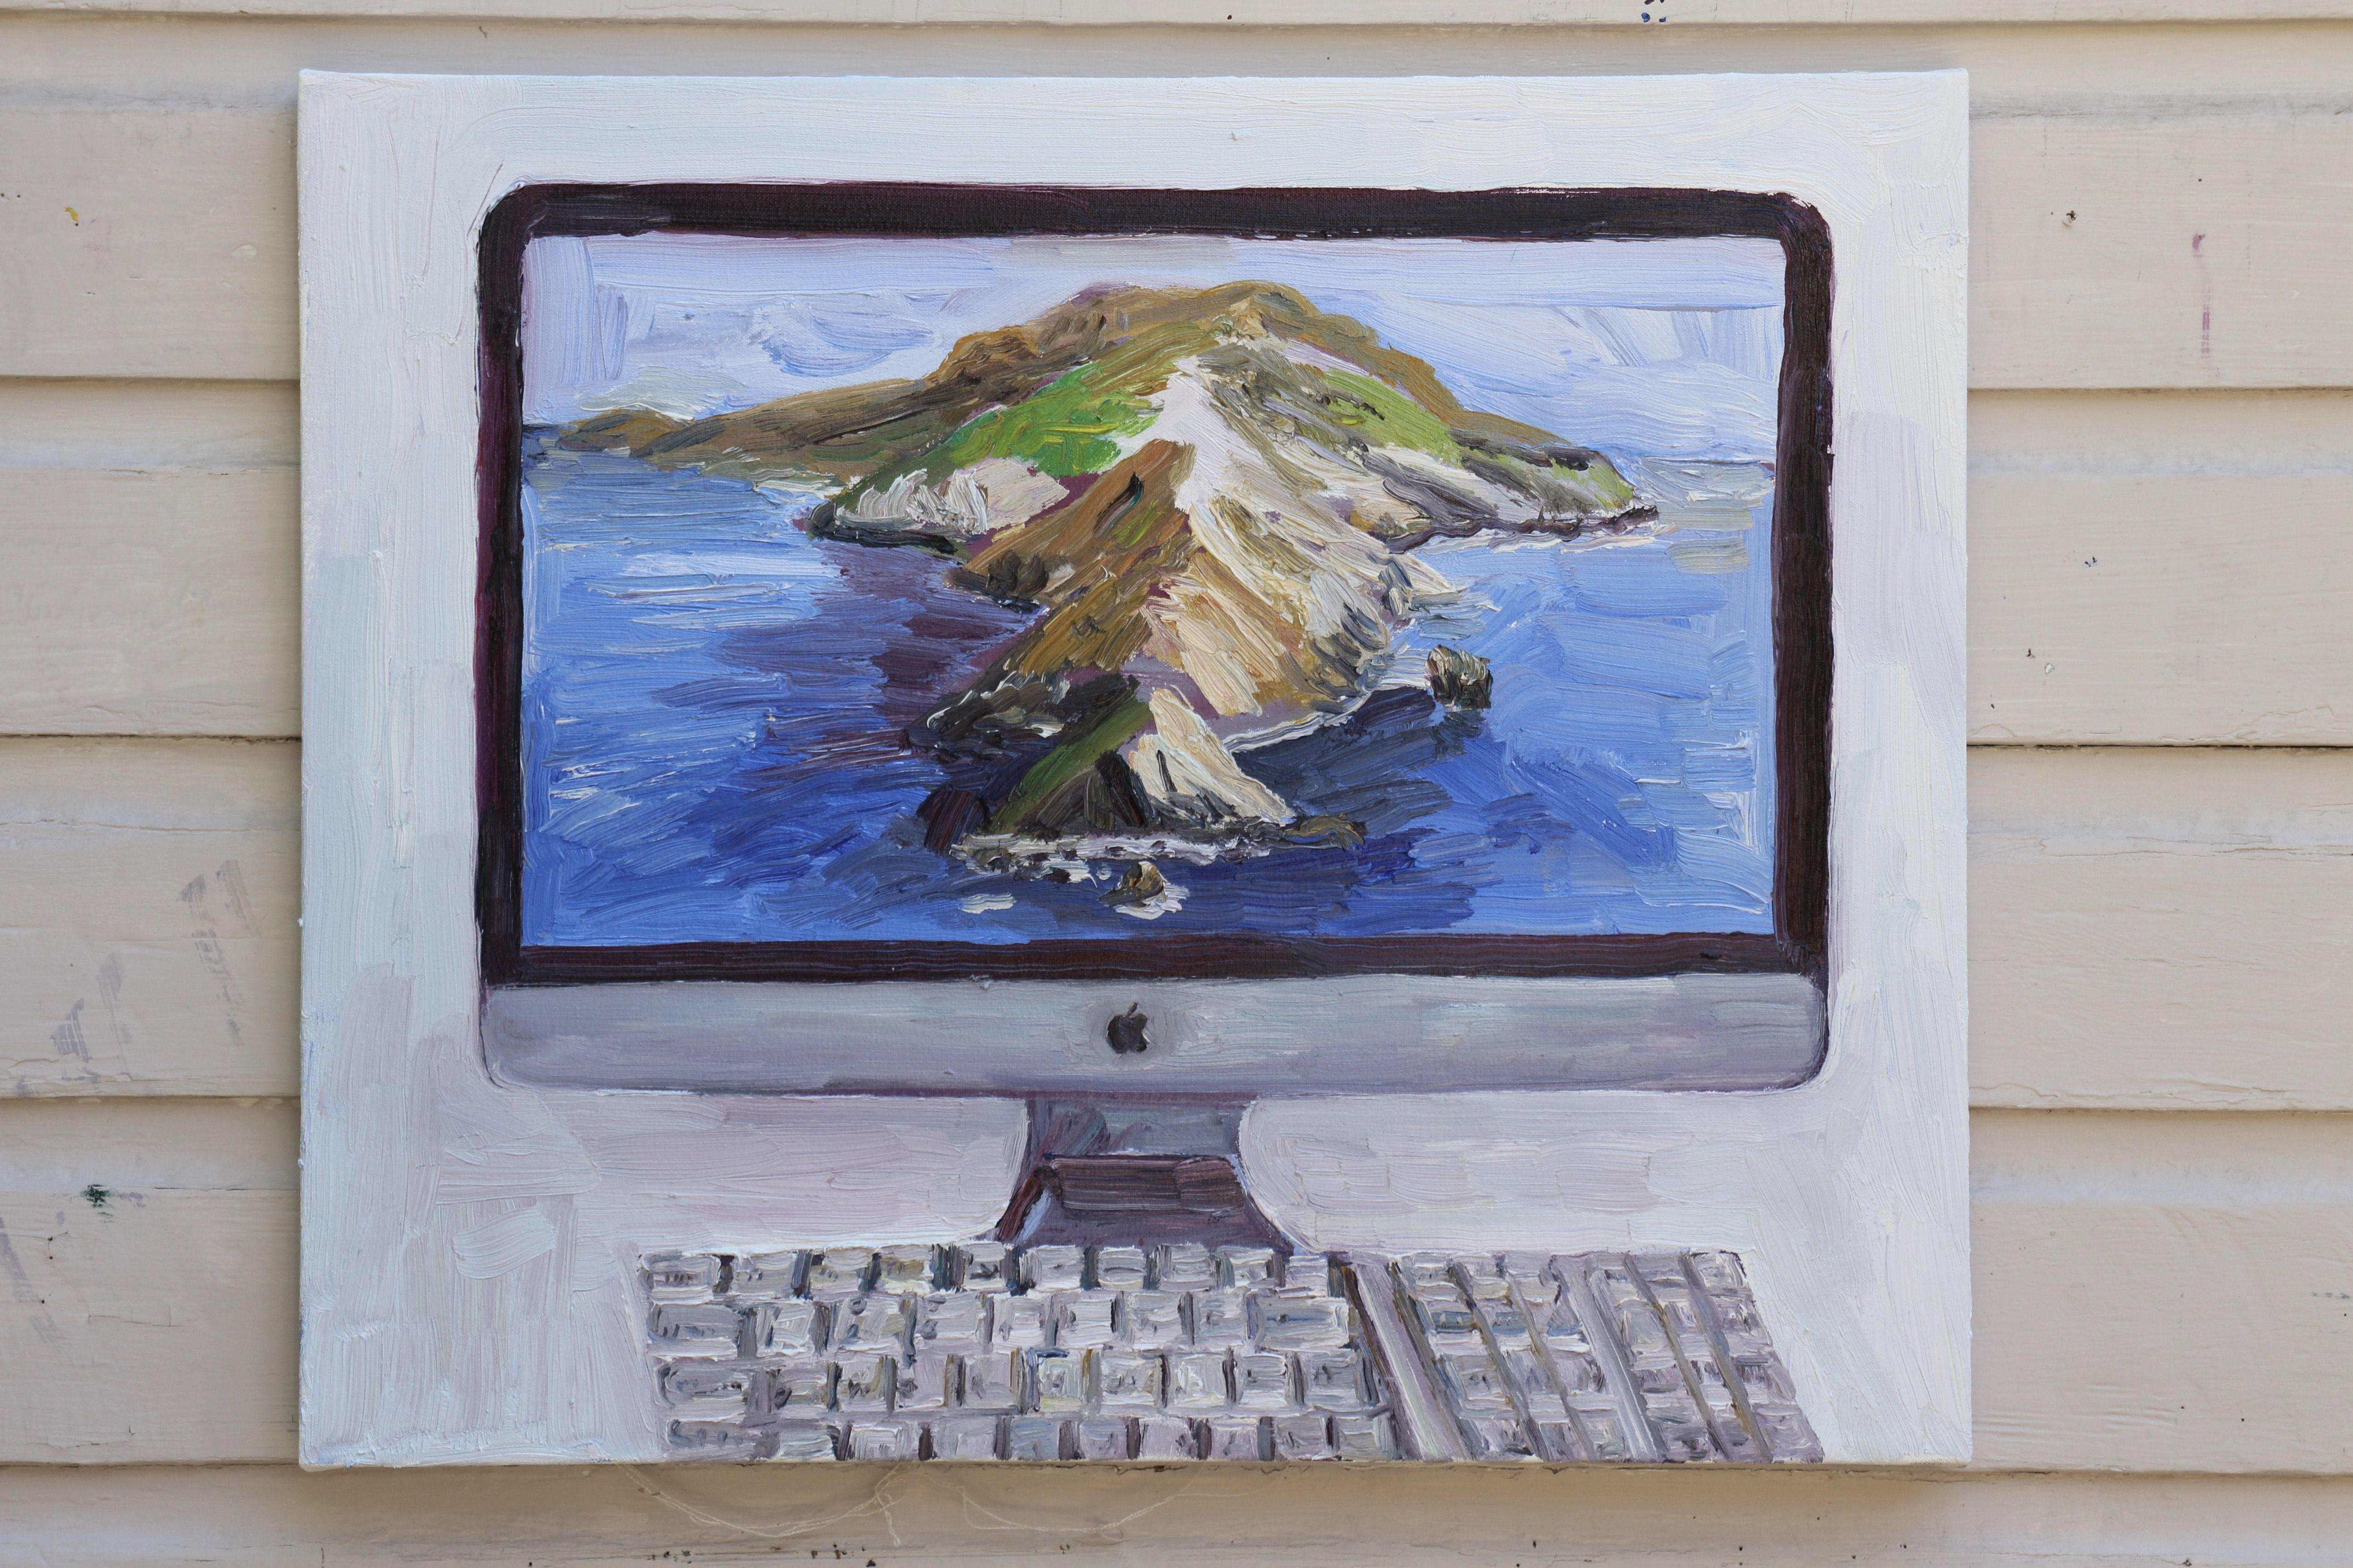 Imac-Schreibtisch mit Catalina-Insel auf dem Schirm, Gemälde, Öl auf Leinwand – Painting von John Kilduff